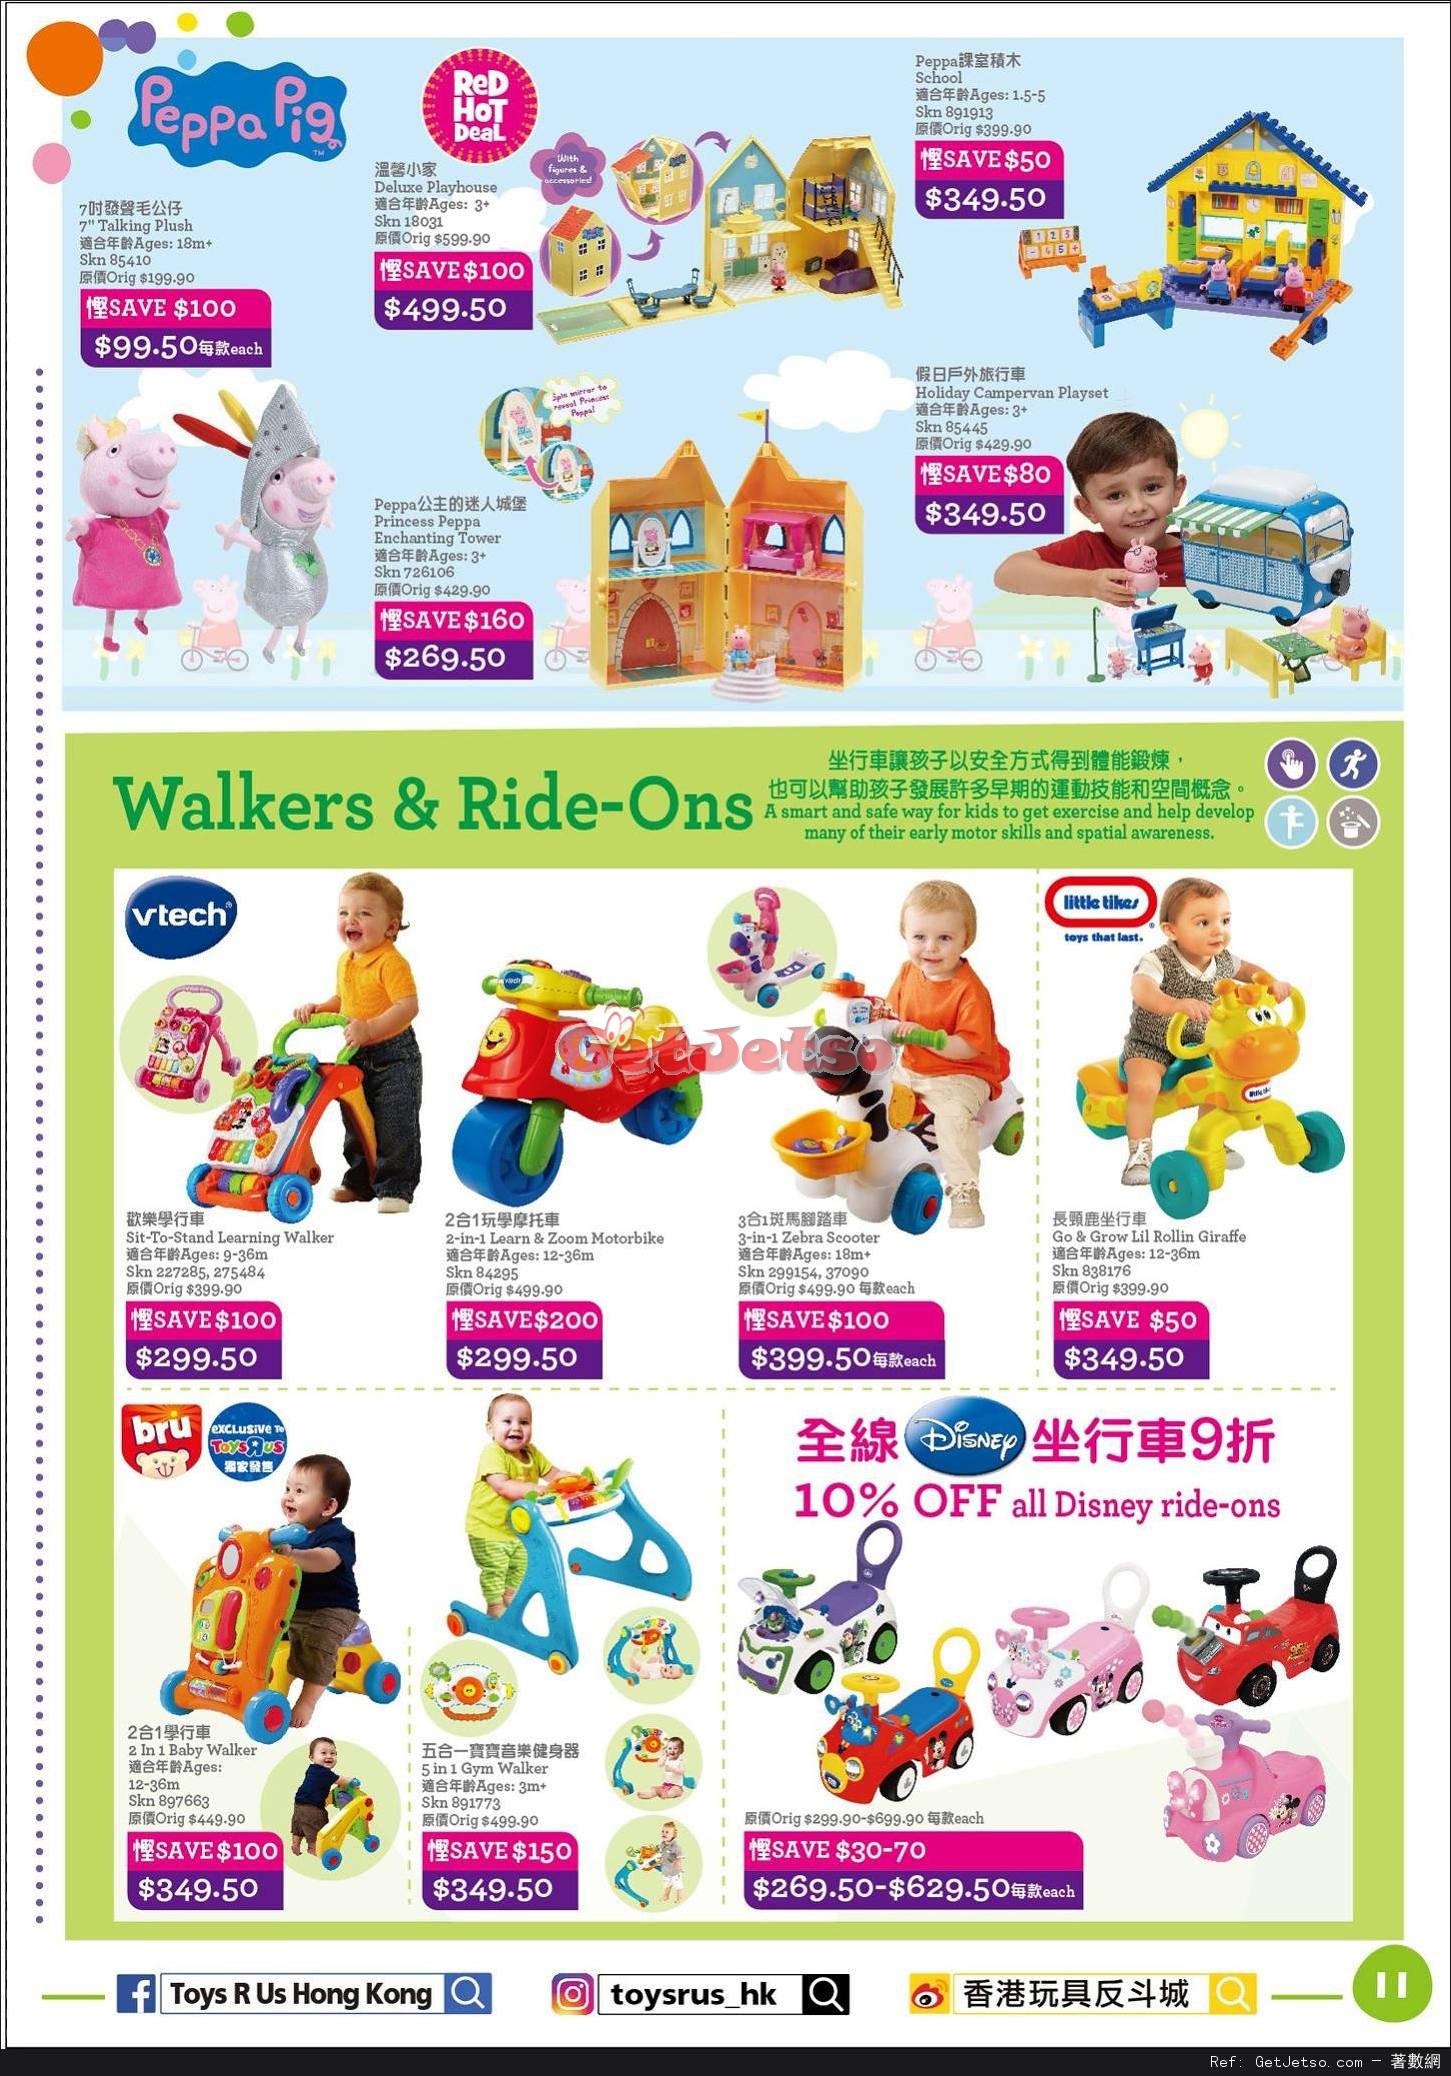 玩具反斗城Toys"R"Us 嬰兒用品低至2折開倉優惠(至17年4月18日)圖片11